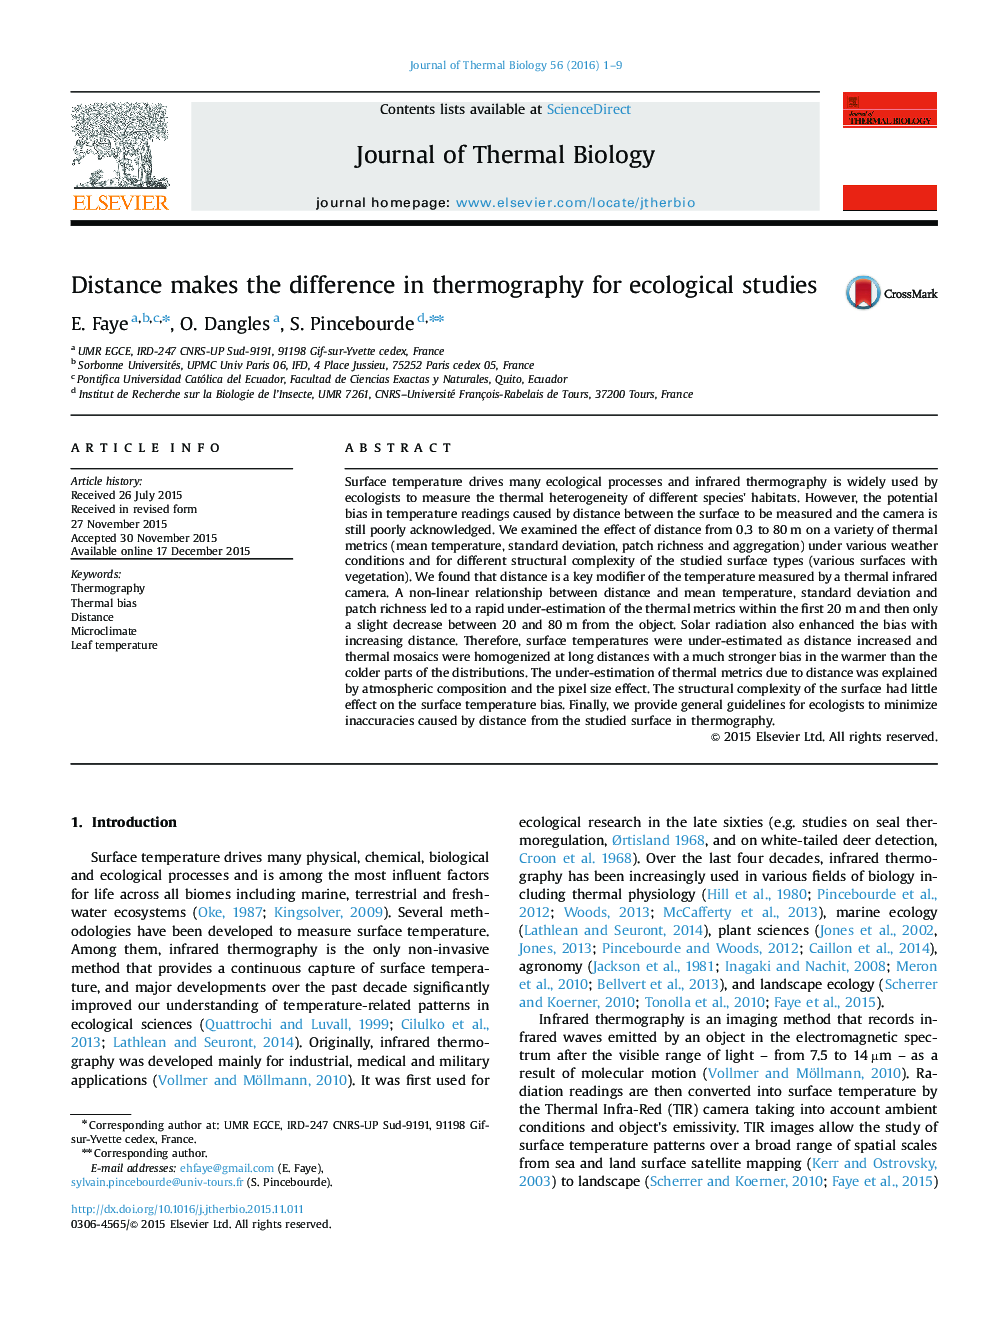 فاصله در ترموگرافی برای مطالعات اکولوژیکی تفاوت می کند 